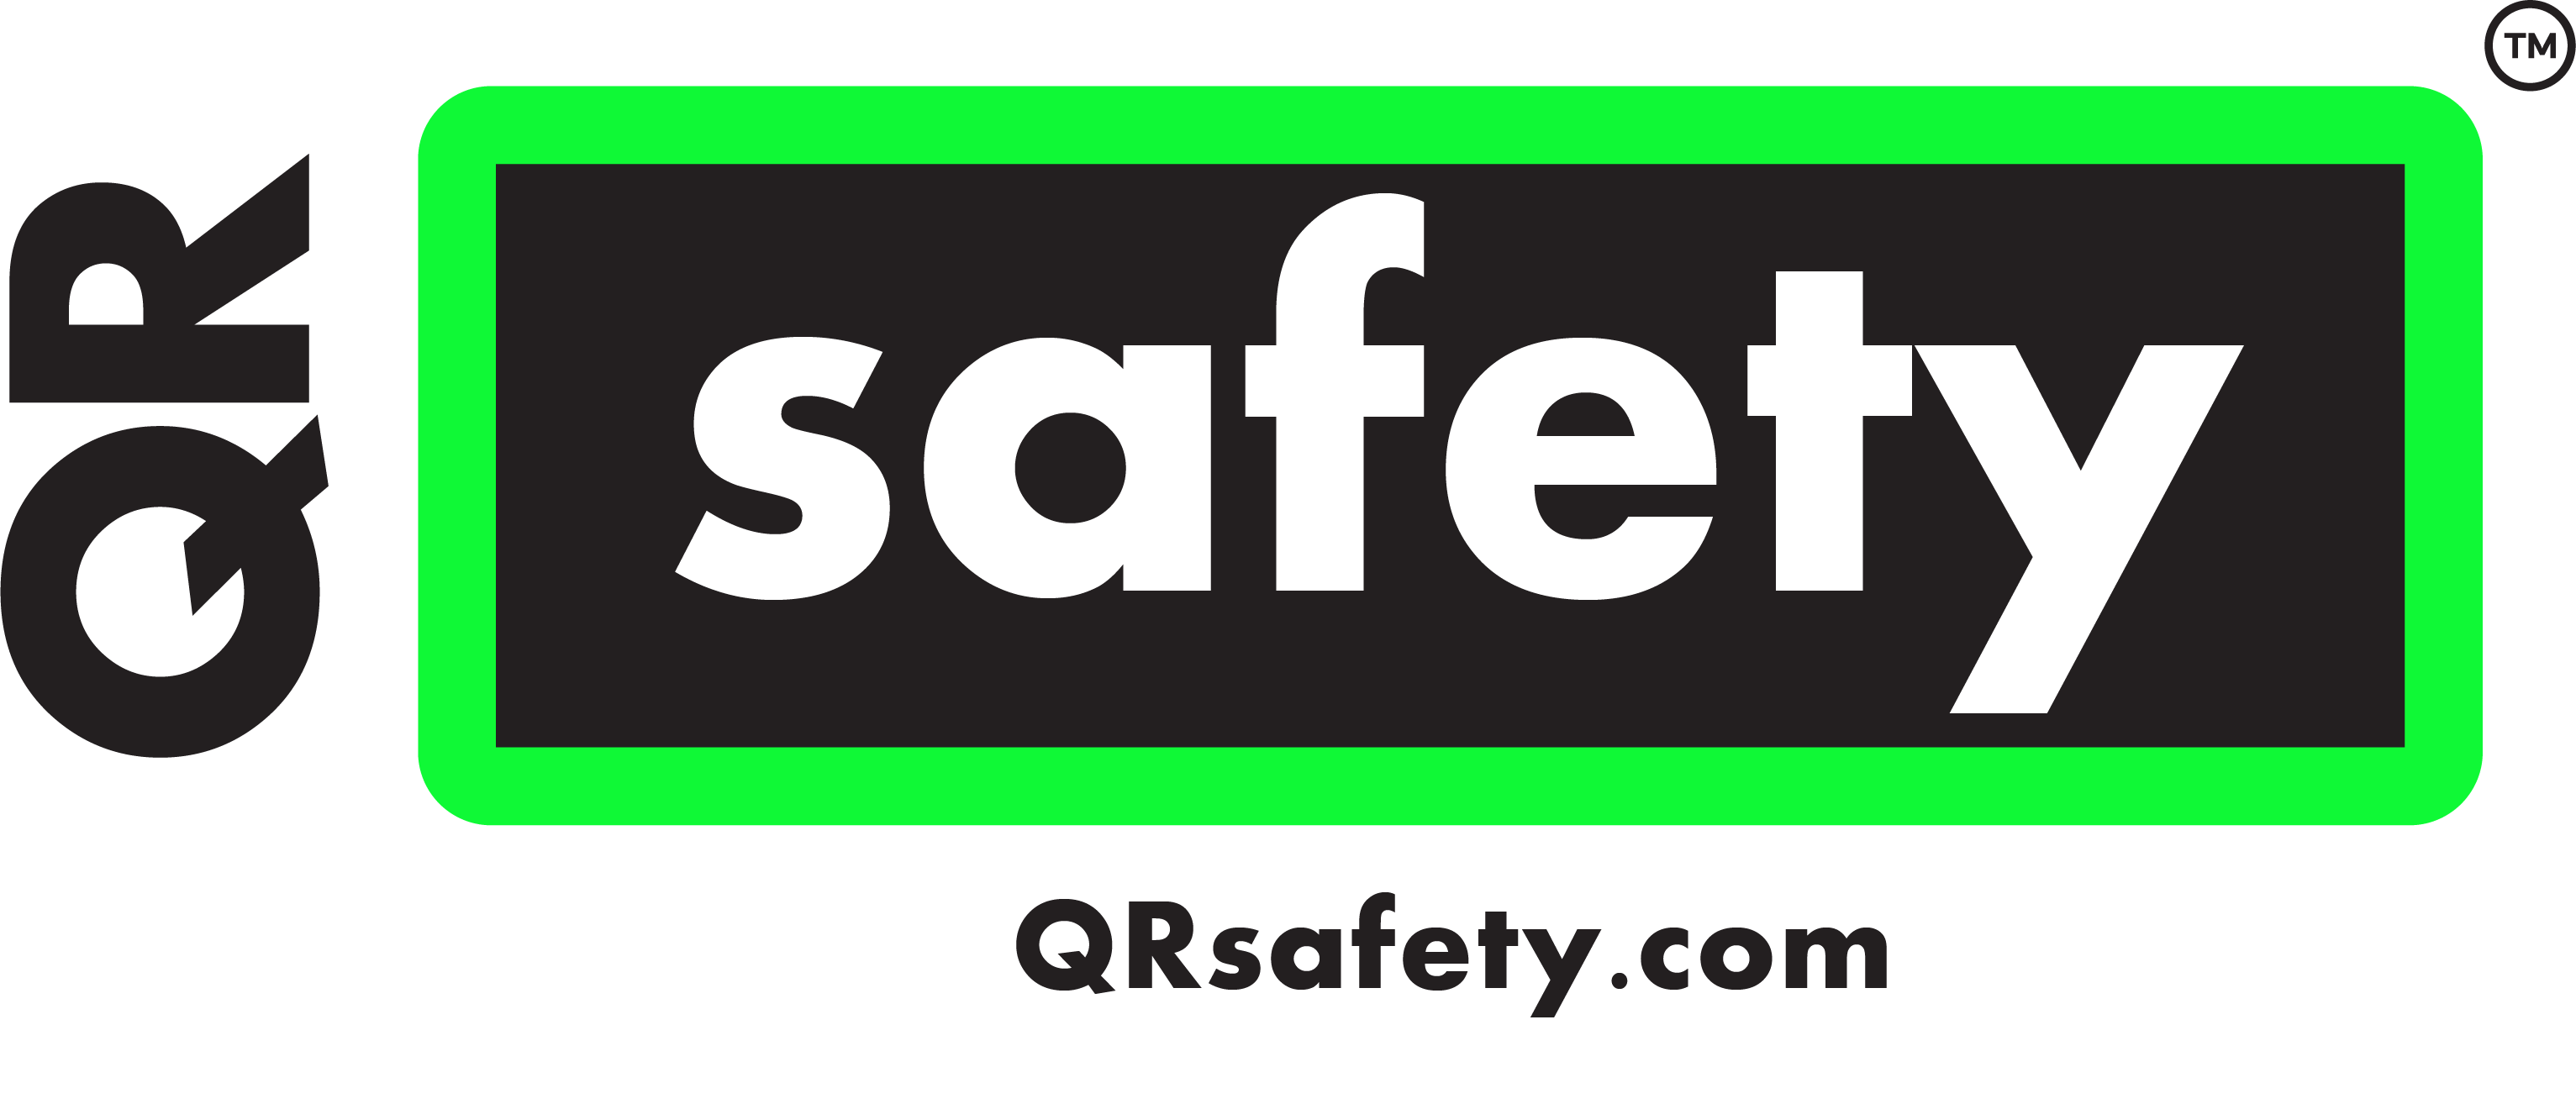 qr-safety